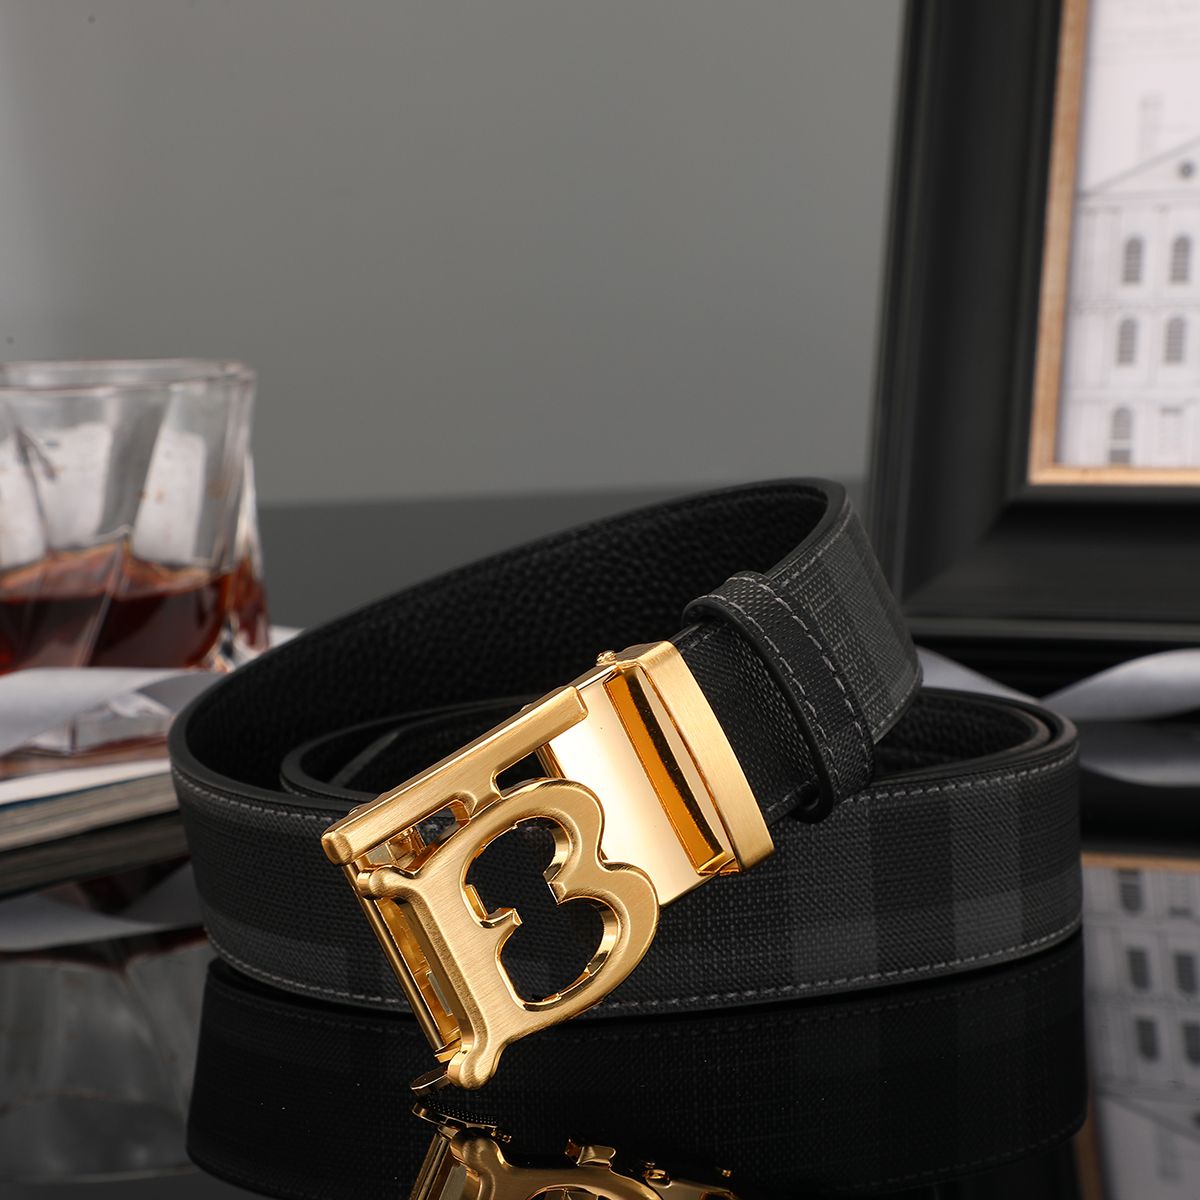 حزام الرجال مشبك تلقائي اسم العلامة التجارية حزام فاخر مخطط إلكتروني إبزيم حزام الموضة الكلاسيكي الذهب والفضة الأسود مشبك عرض غير رسمي مقاس 3.8 سم